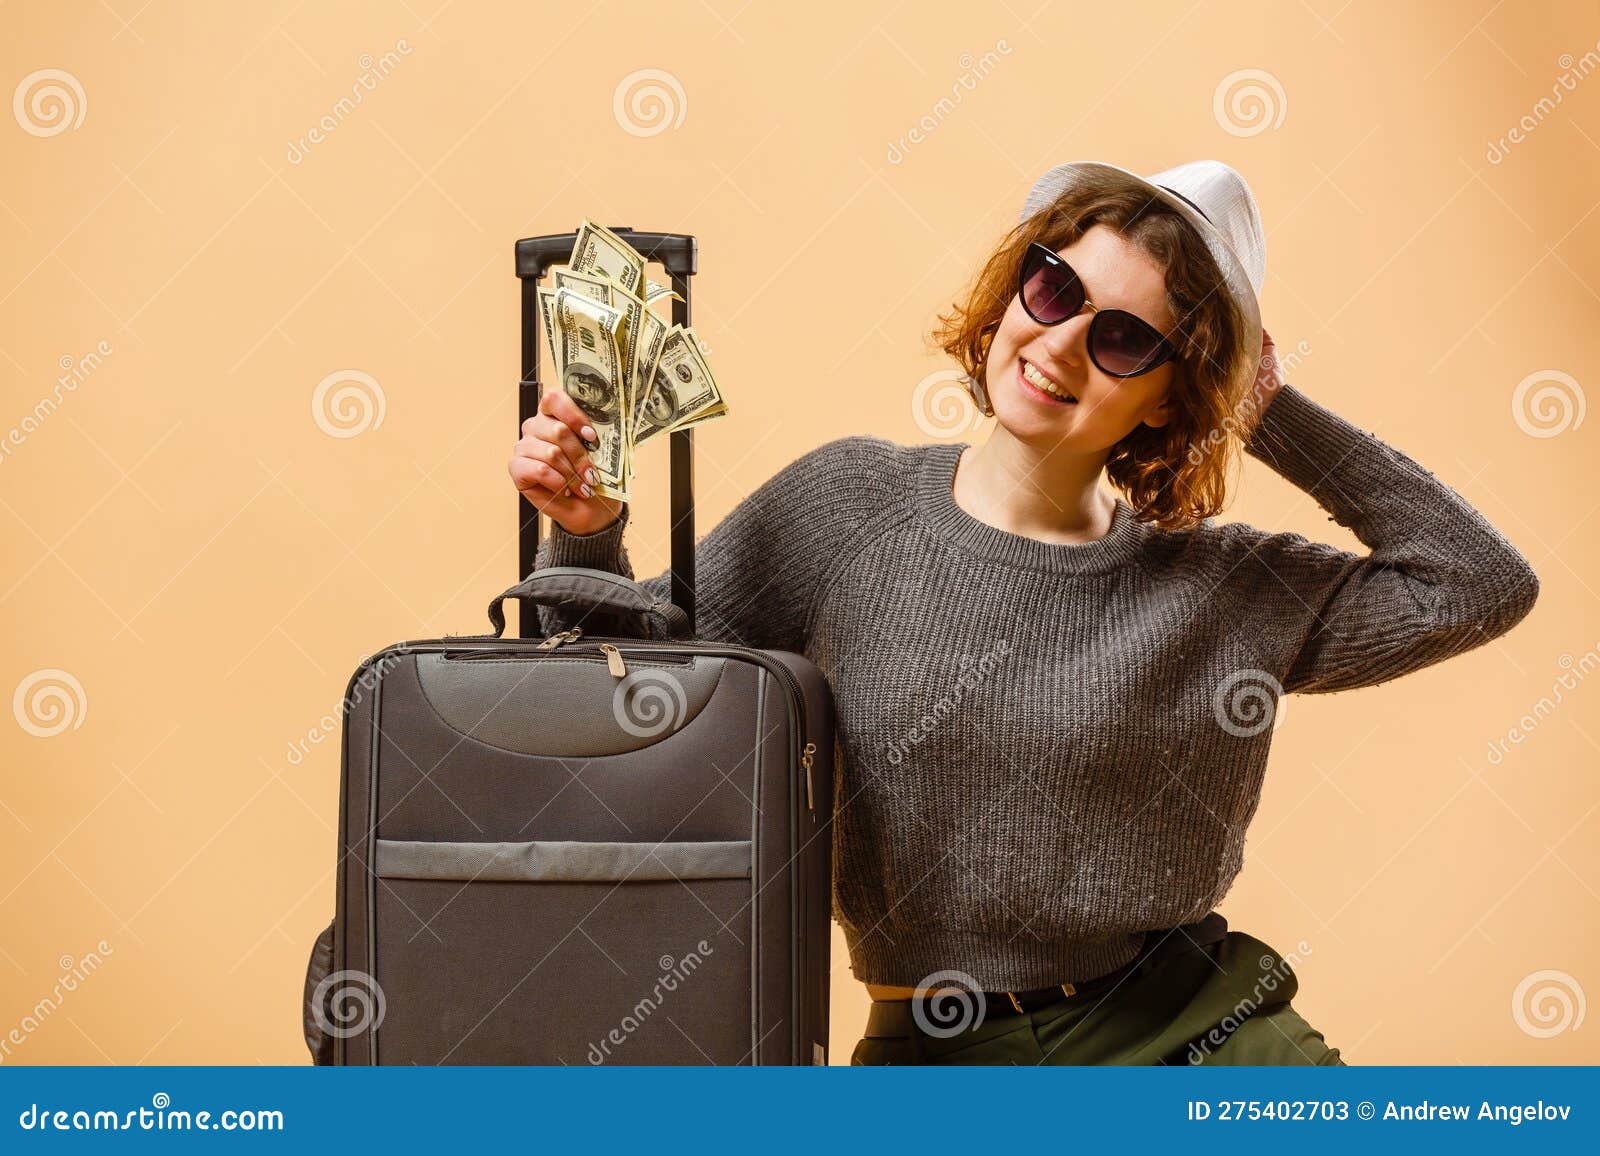 Sacs de voyage & valises femme argent